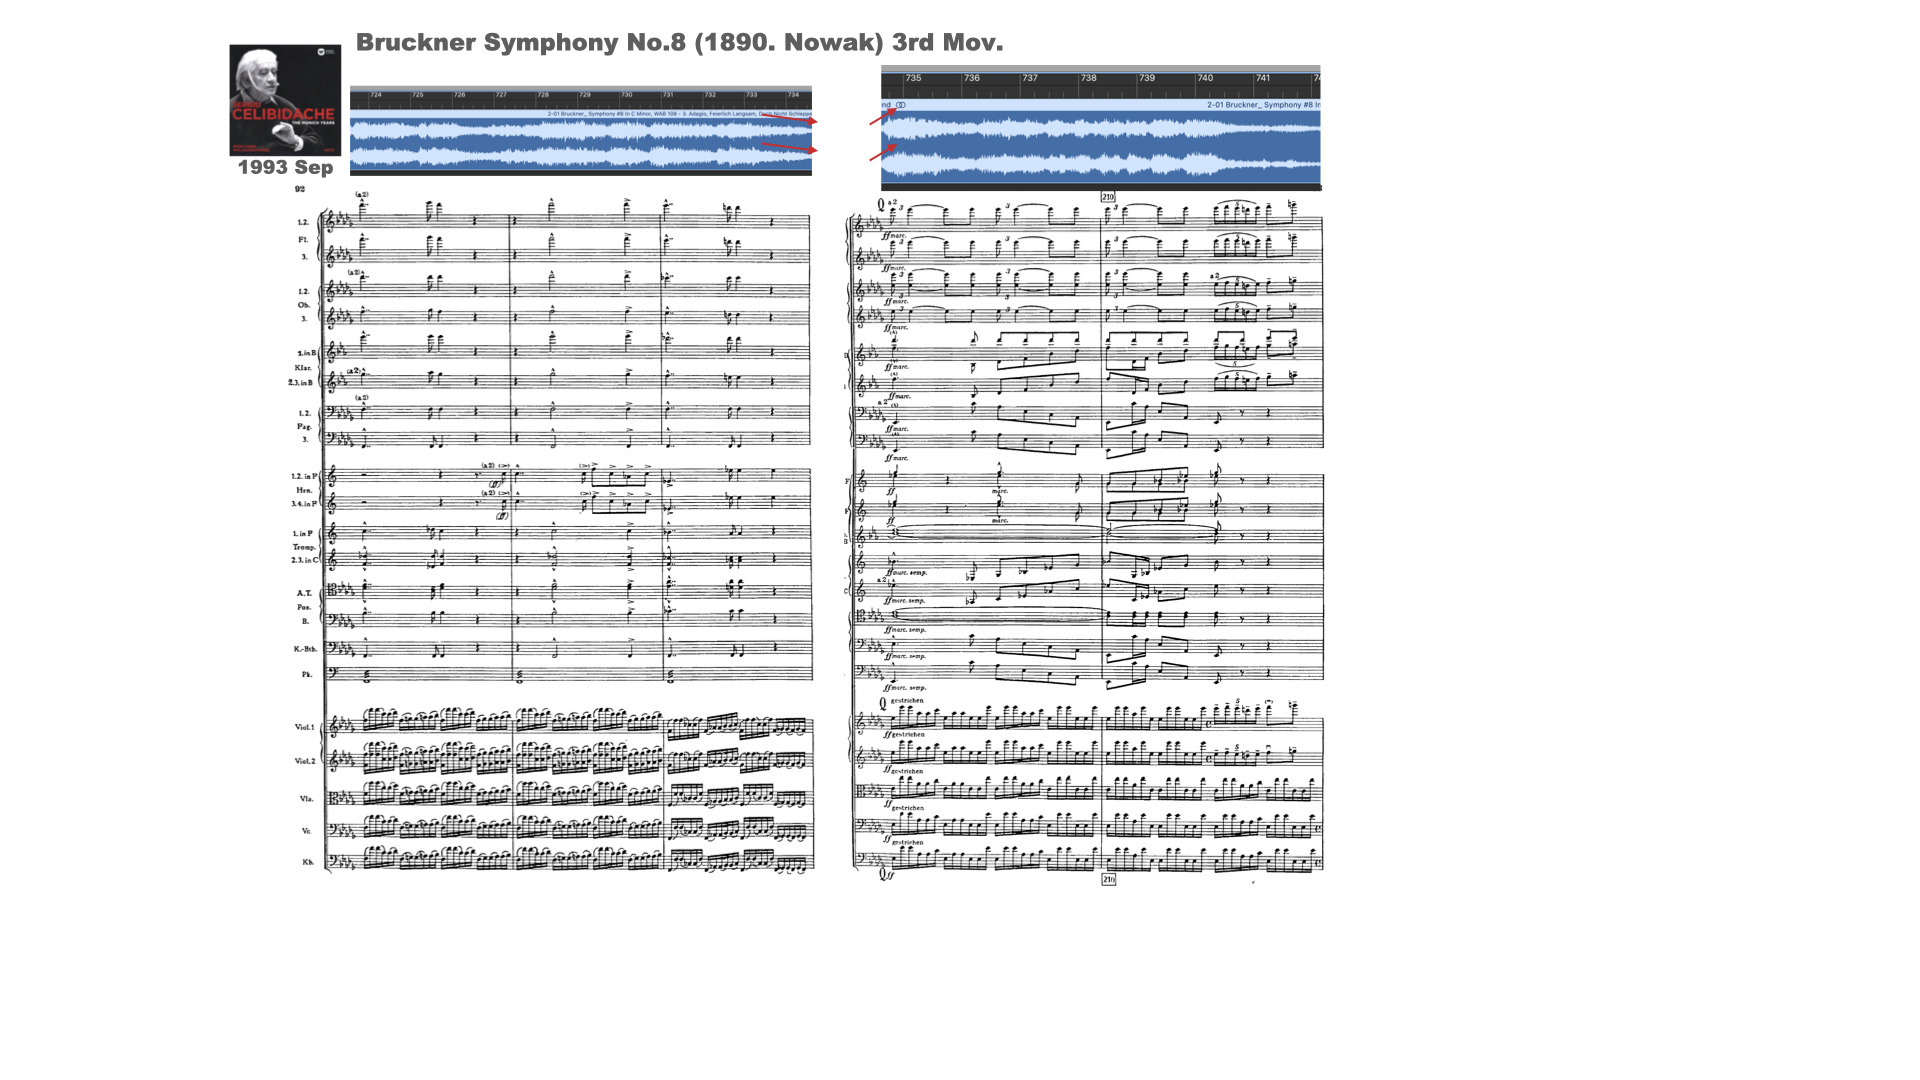 ブルックナーのノーヴァク版の交響曲第8番第3楽章の209小節前後のチェリビダッケとミュンヘンフィルの演奏